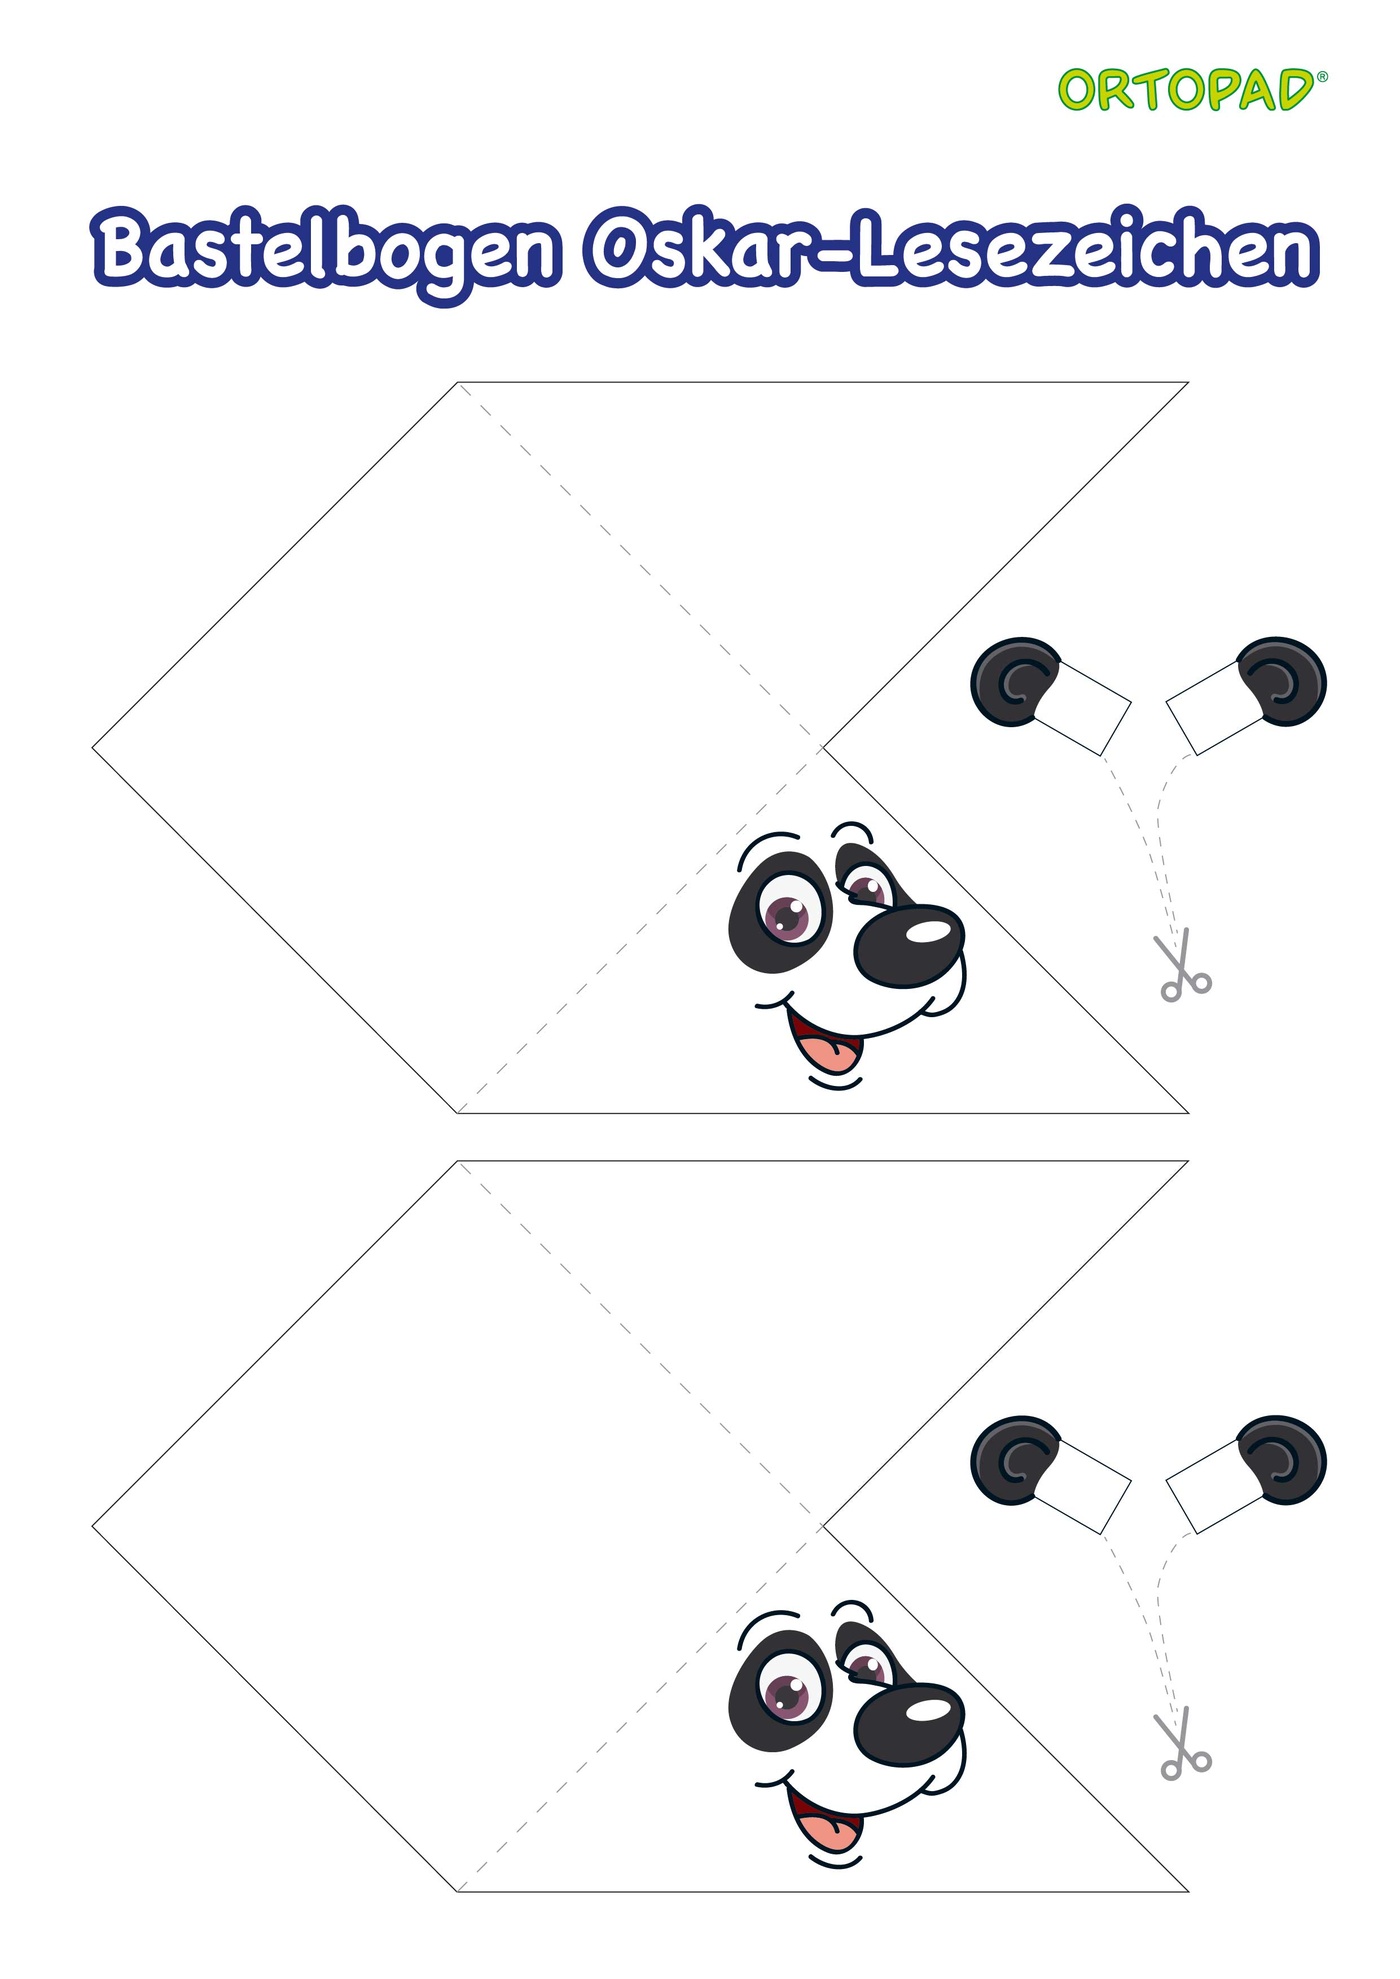 Bastelbogen eines Lesezeichens mit Panda Oskar